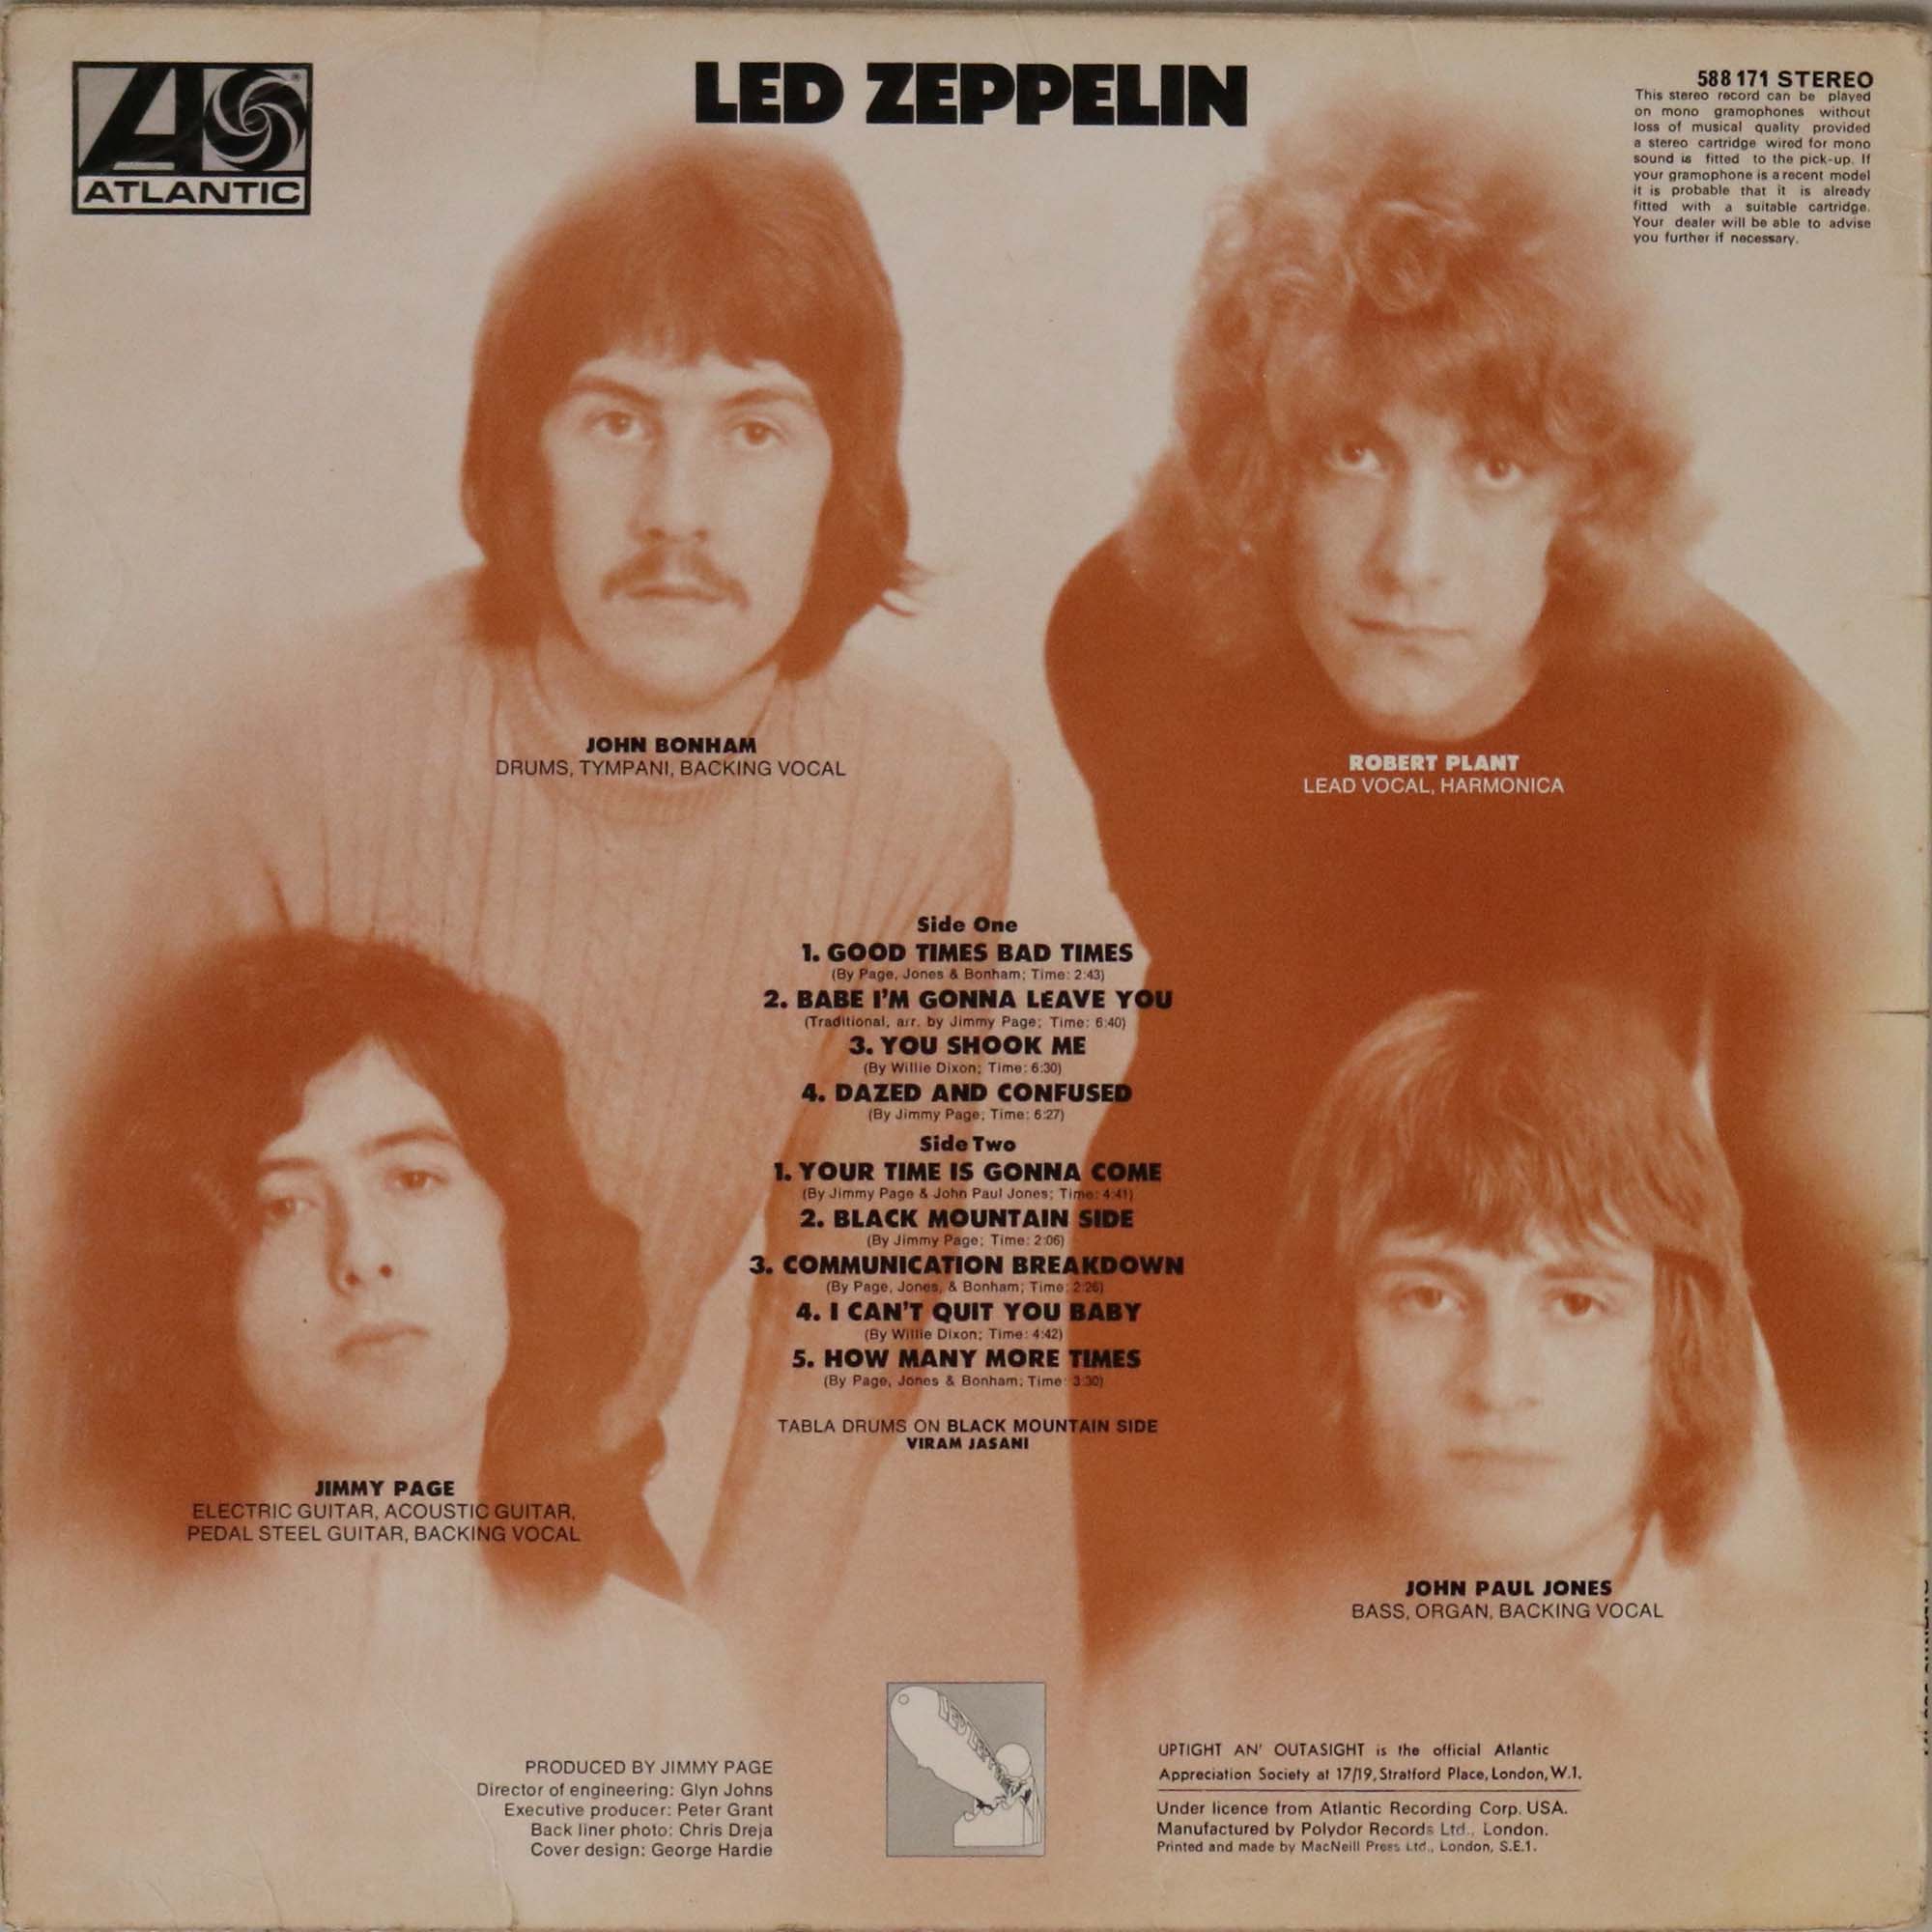 LED ZEPPELIN - I (1ST UK PRESSING LP - ATLANTIC 588171). - Image 2 of 4